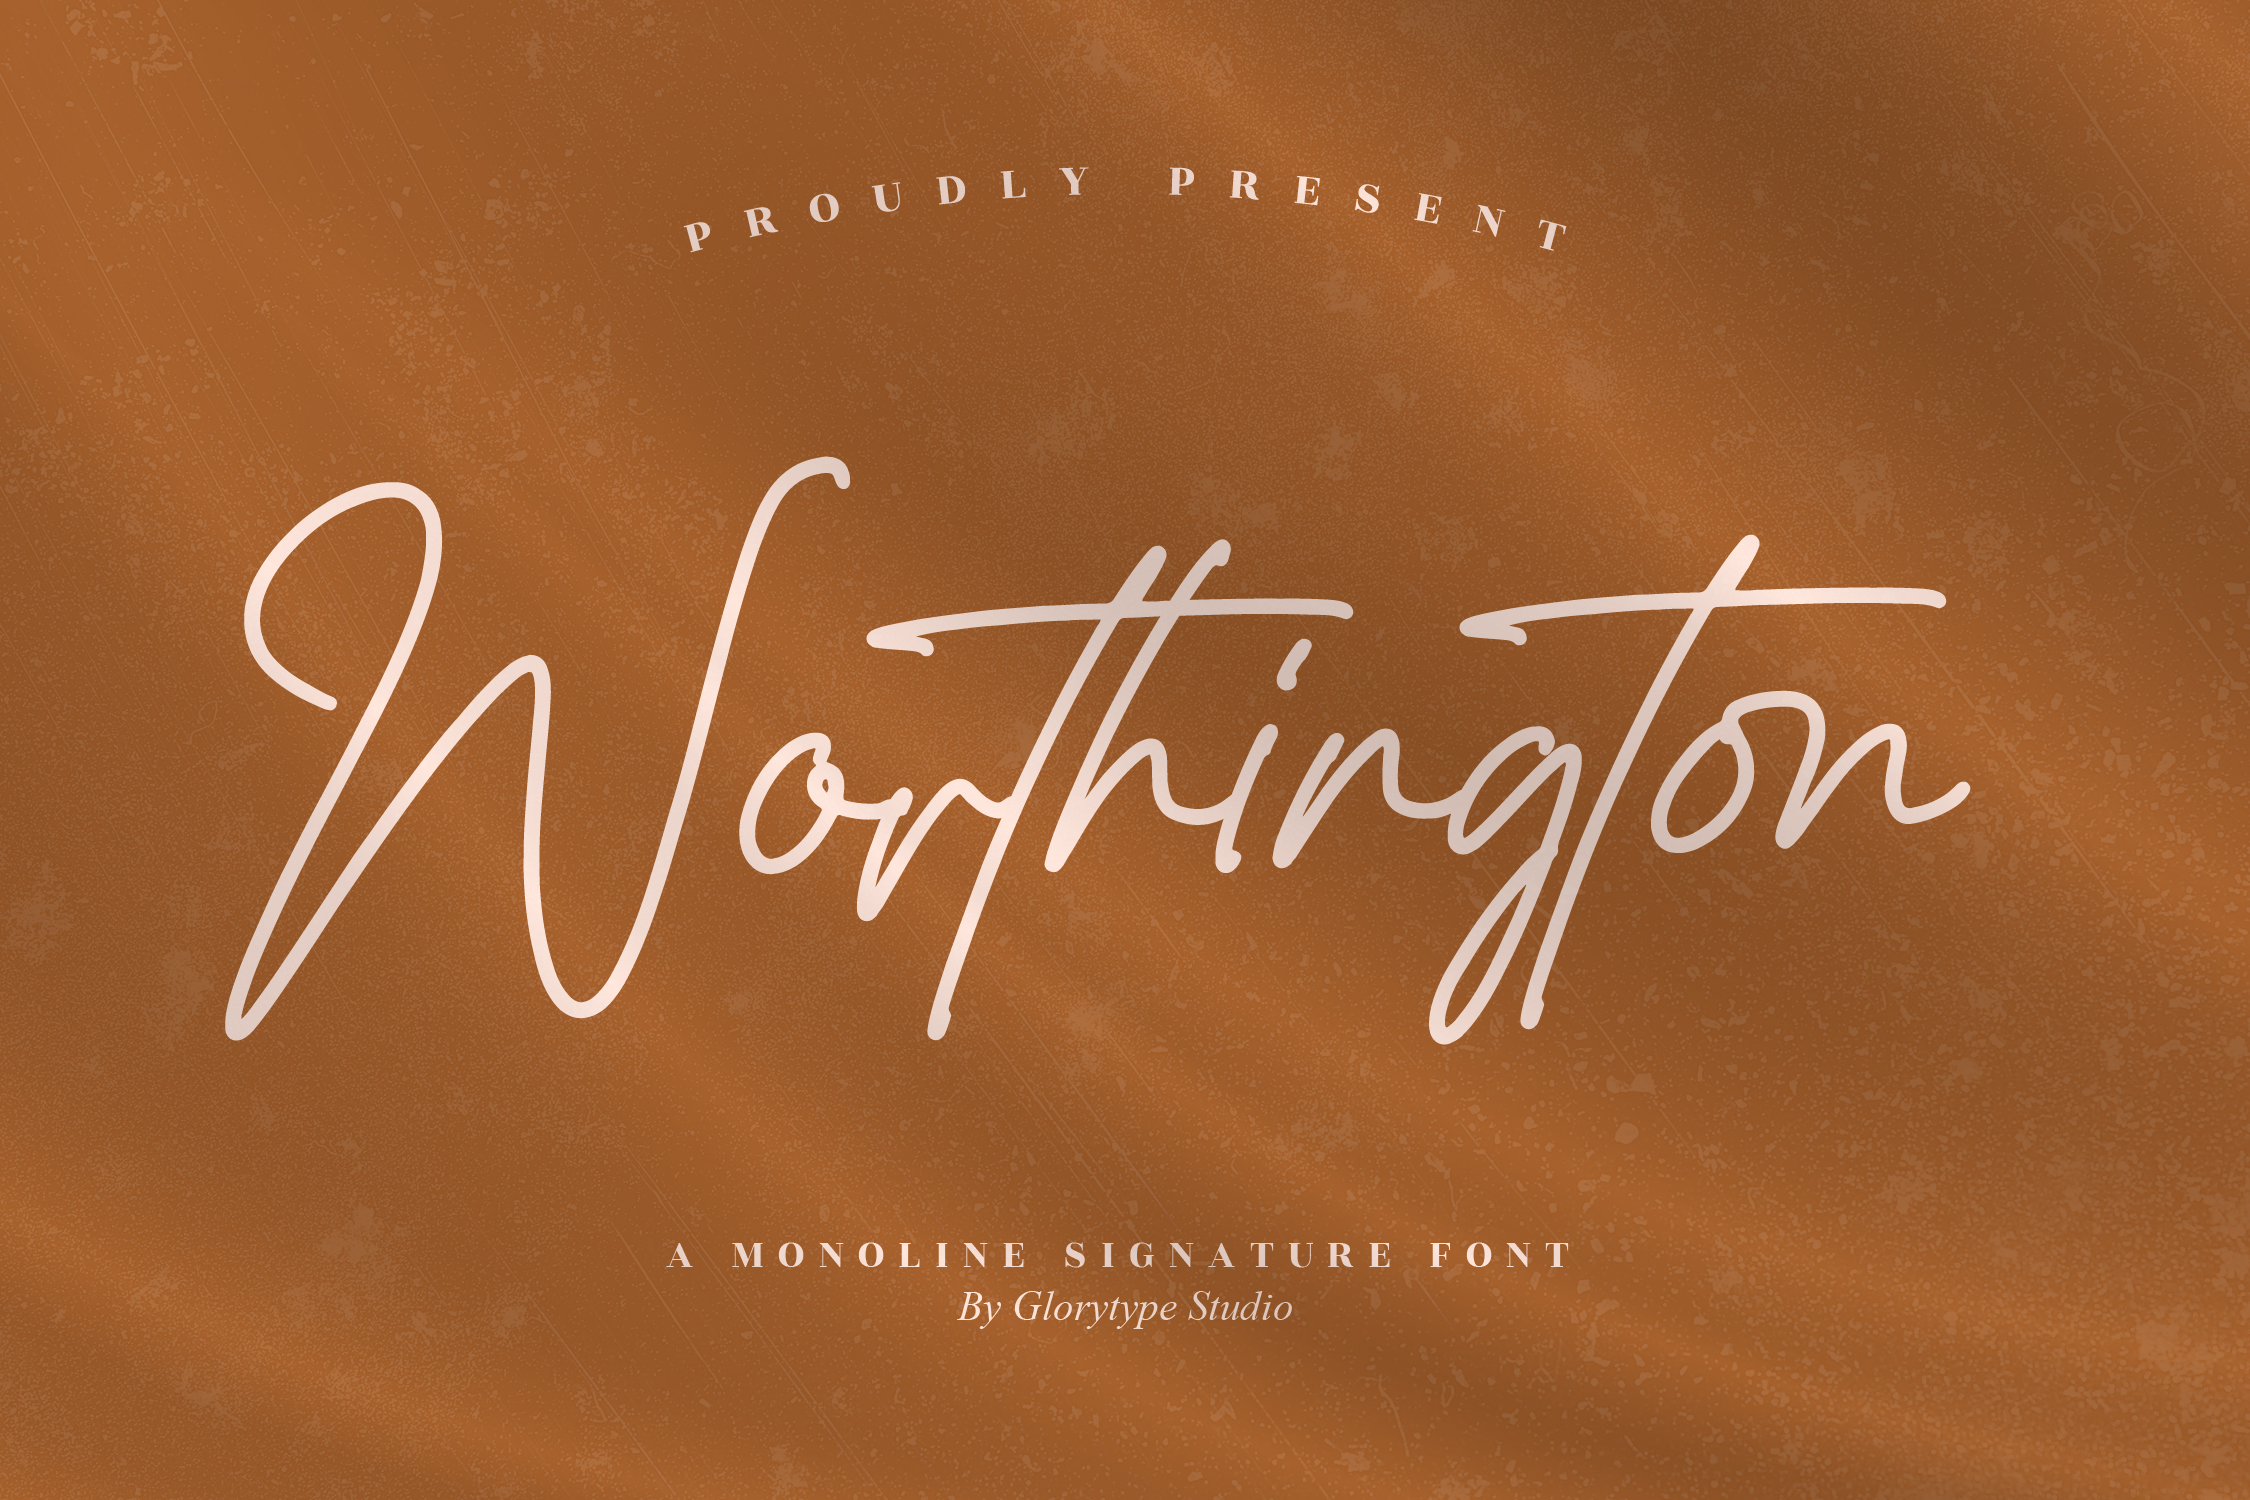 Worthington